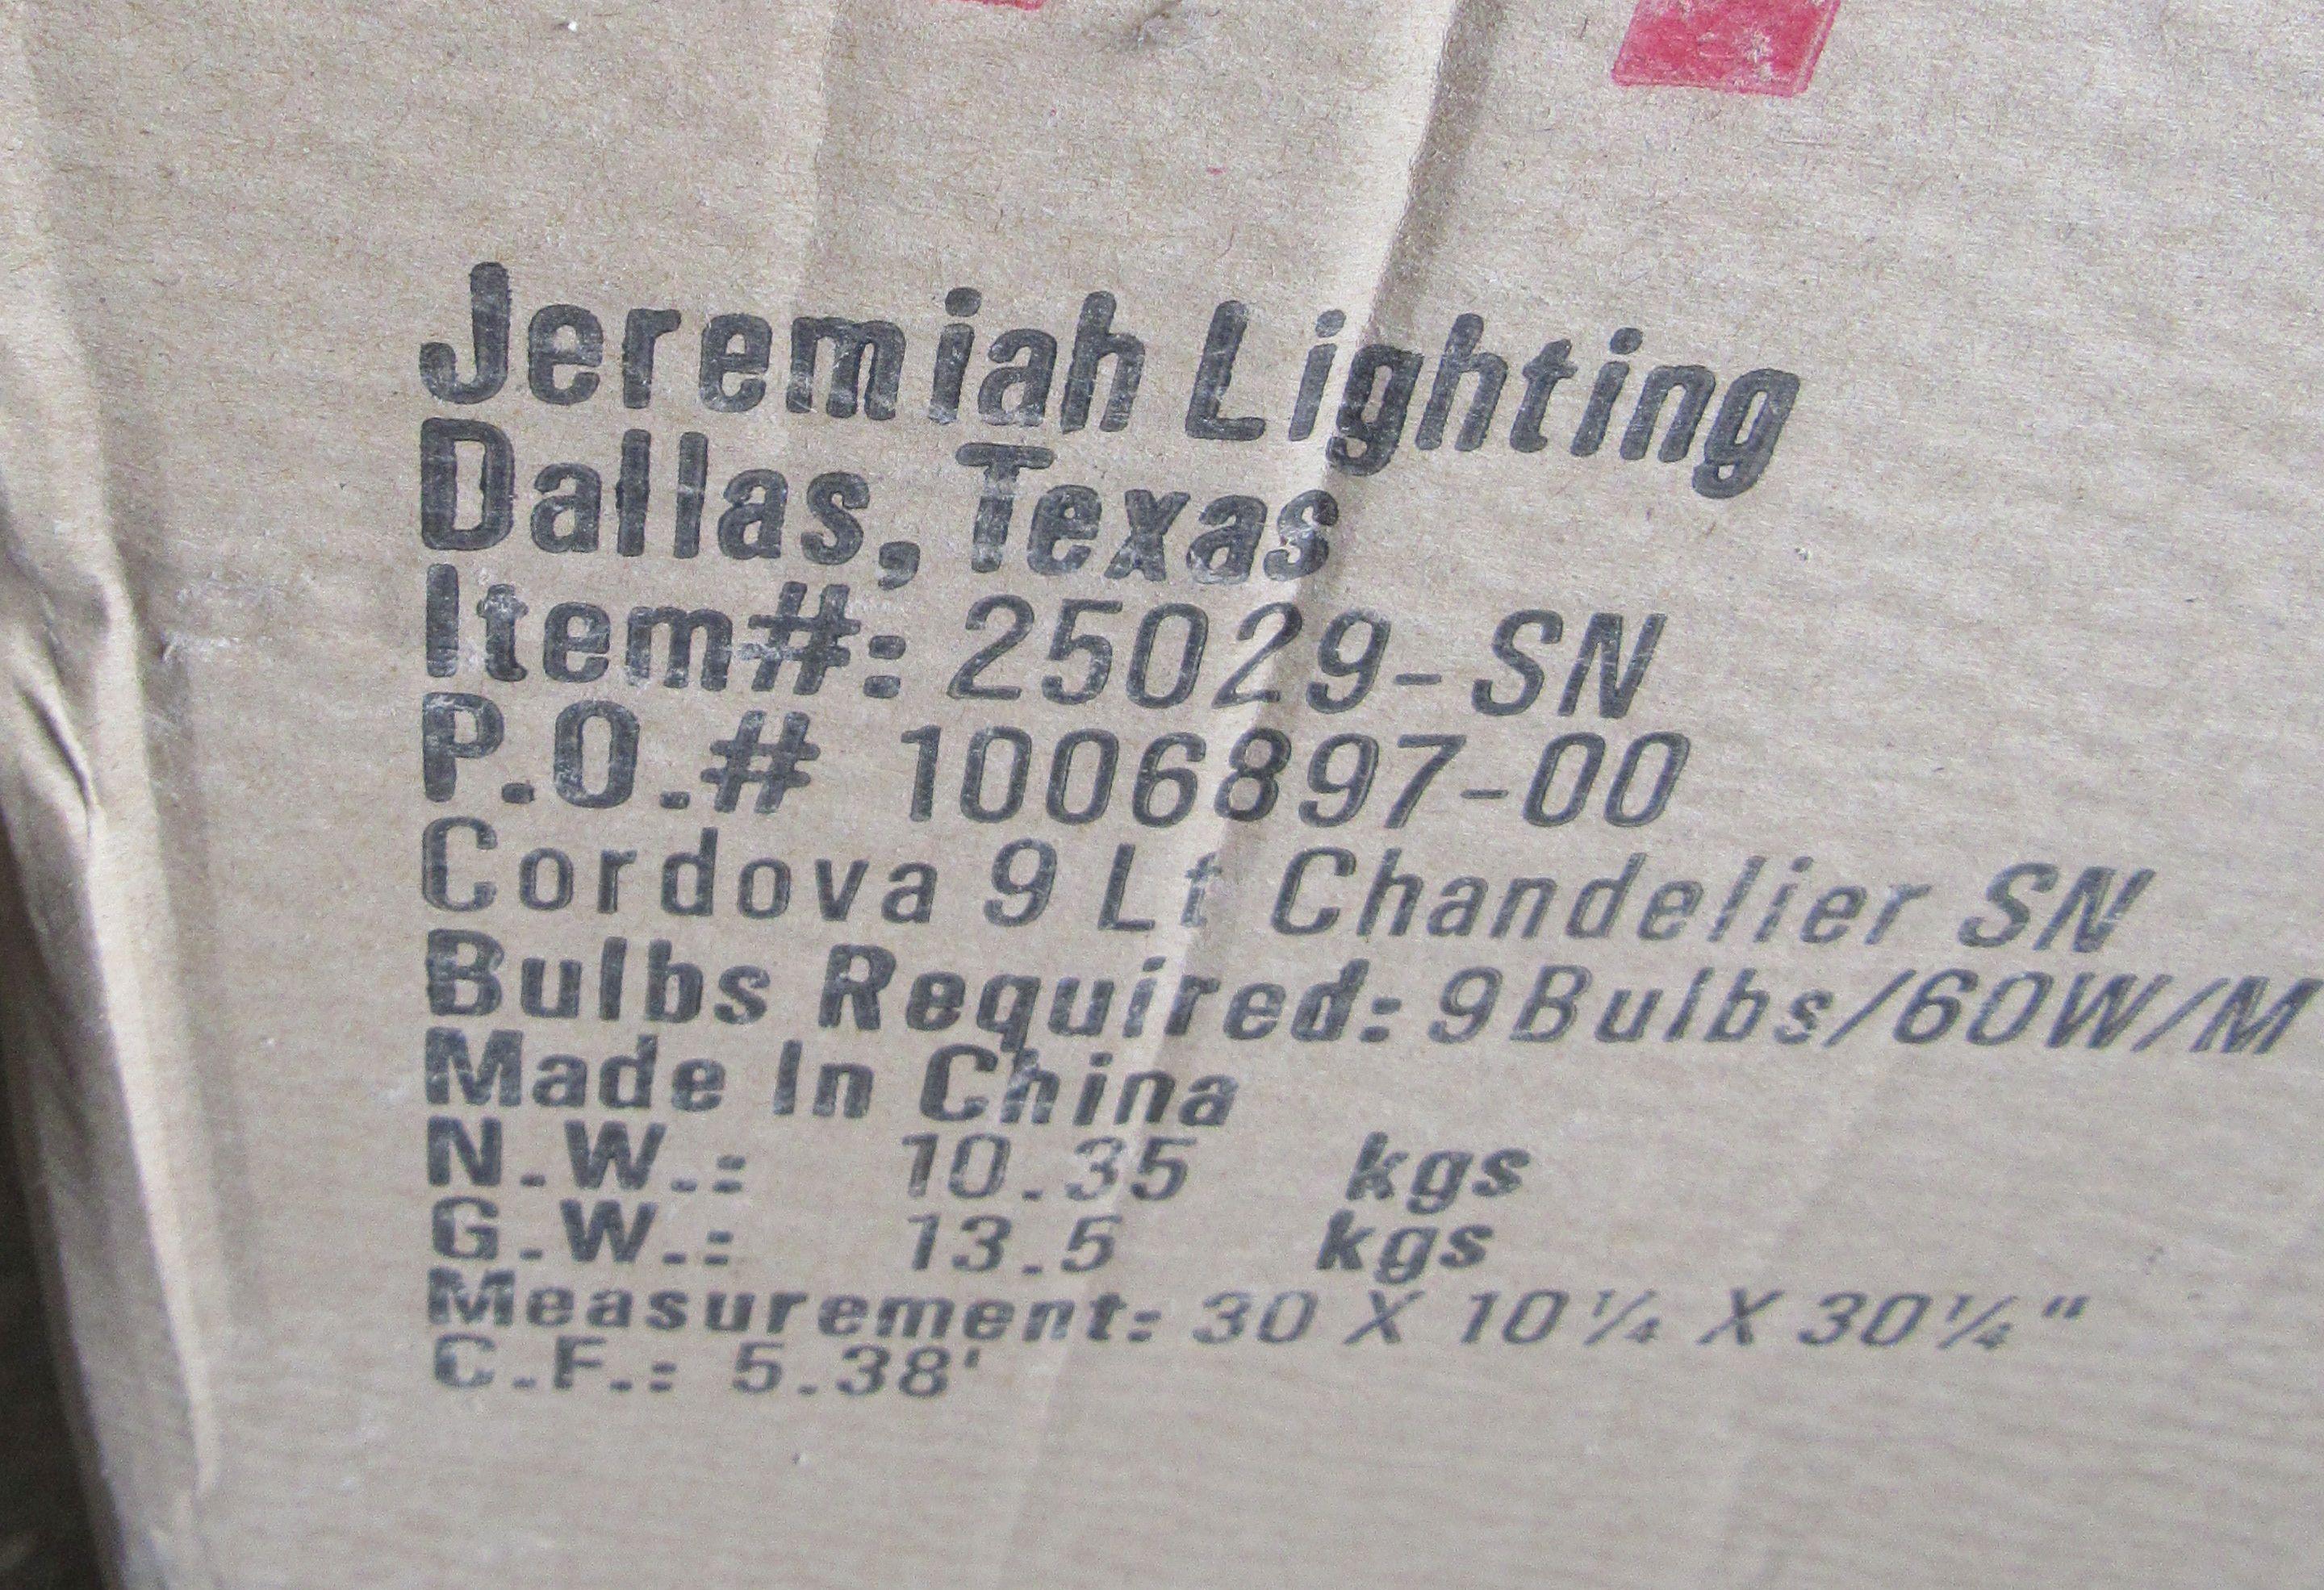 Jeremiah Lighting 9-light Chandelier #25029-SN